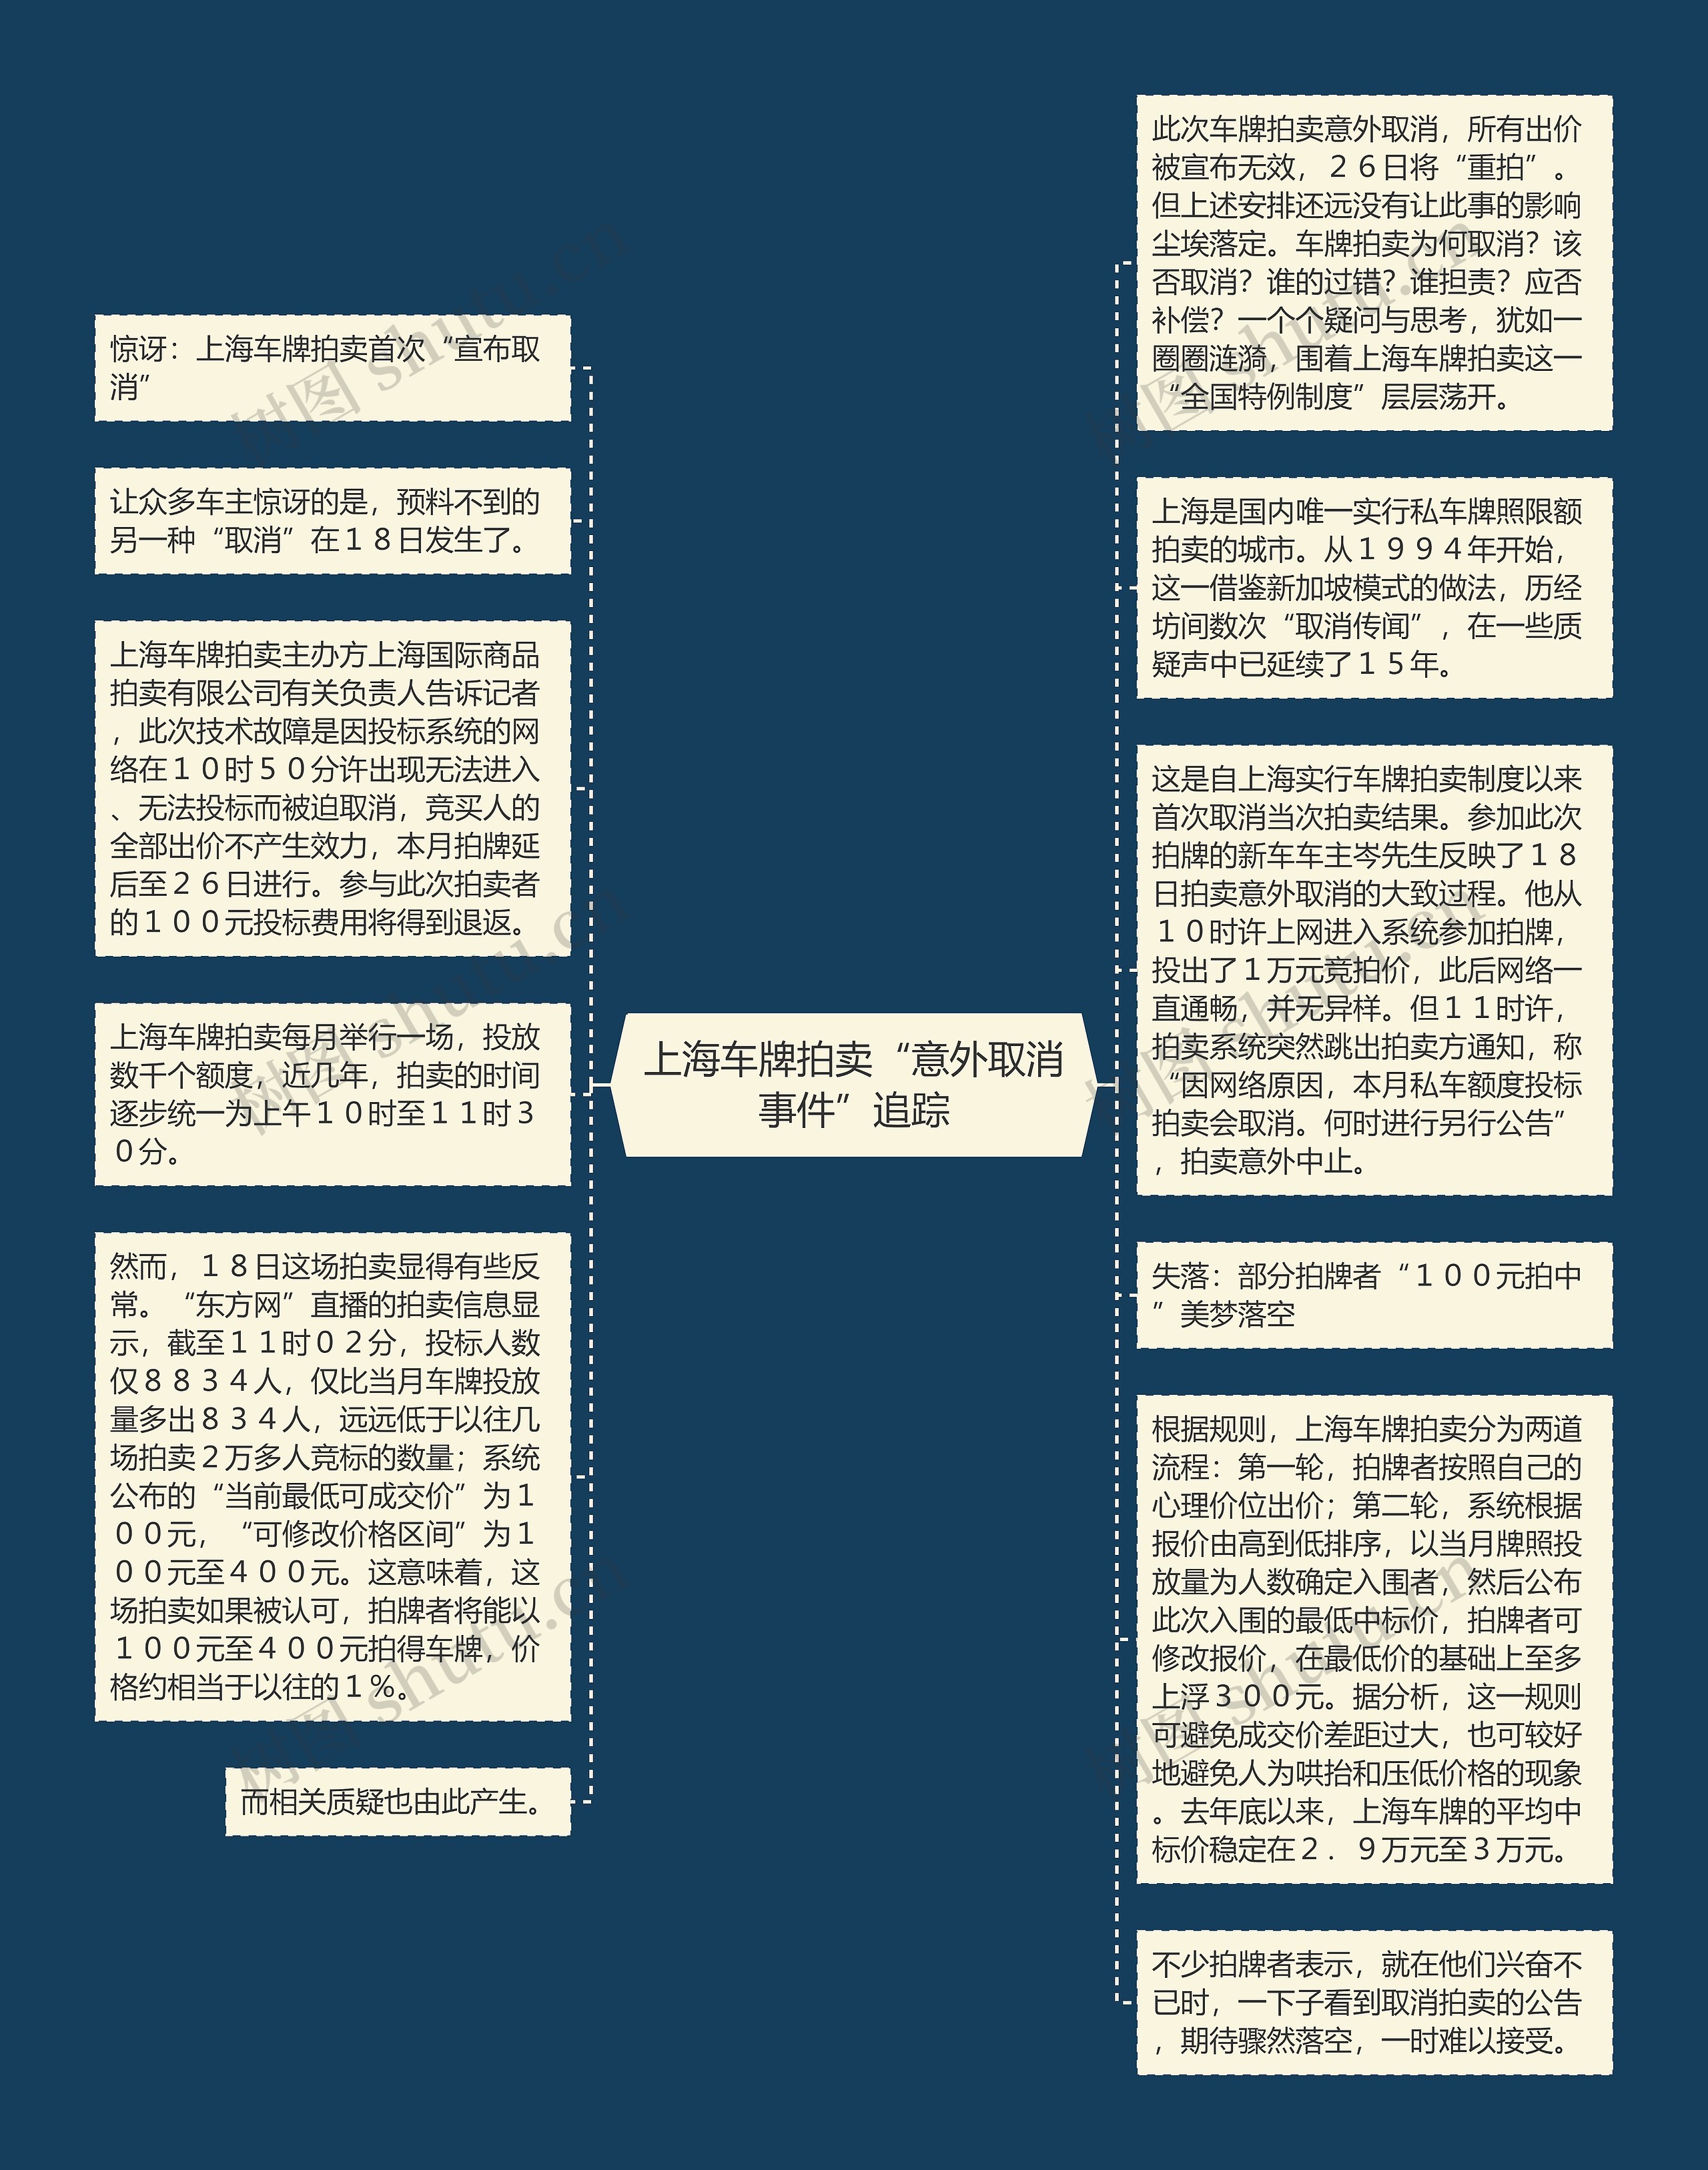 上海车牌拍卖“意外取消事件”追踪